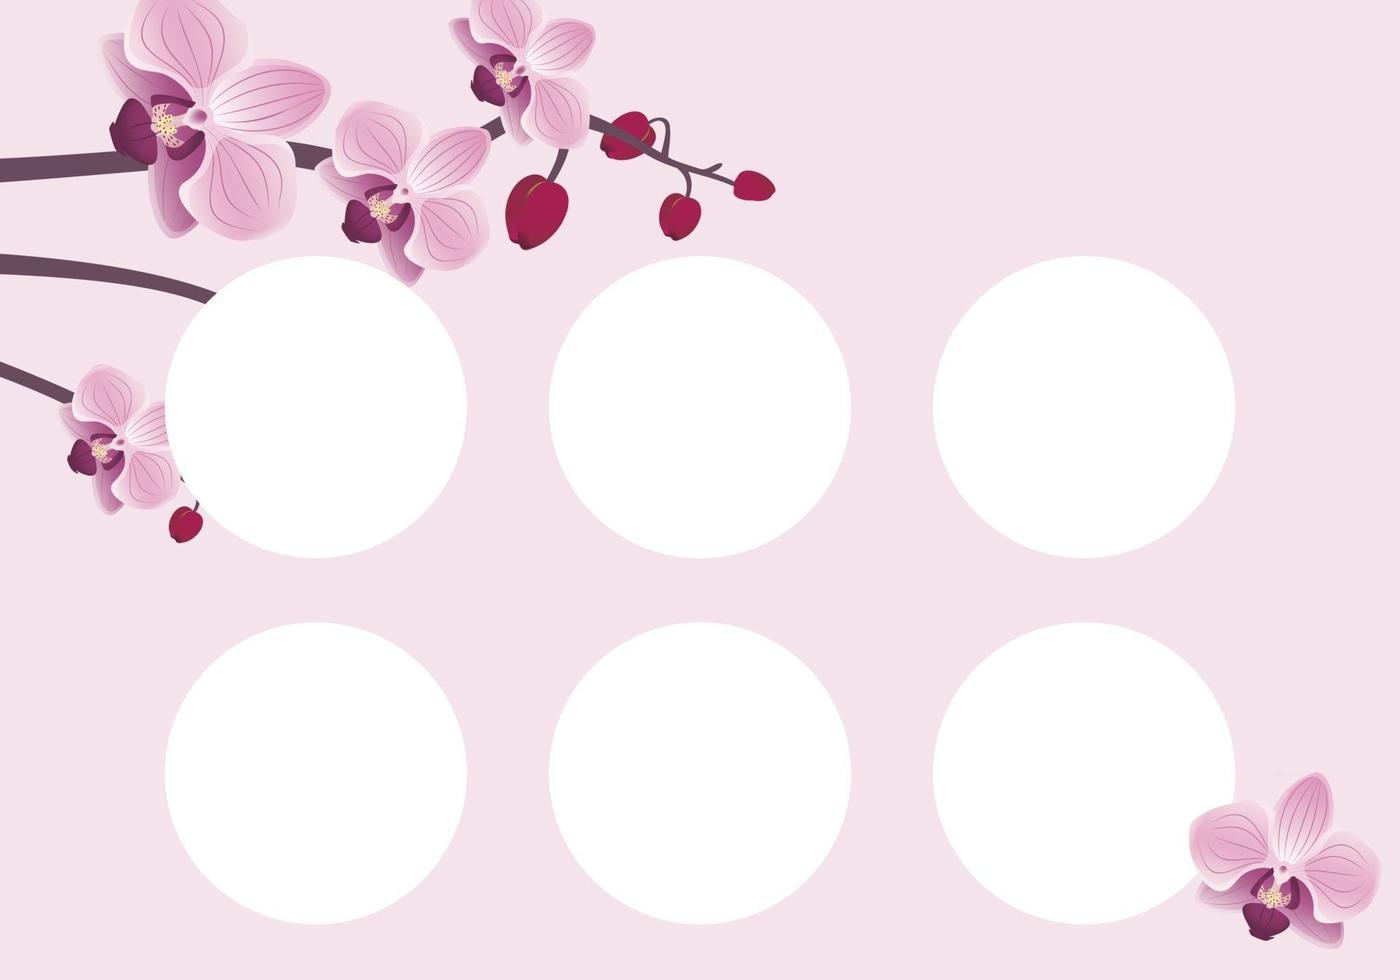 Plantilla de tarjeta de descuento con flores de orquídeas. composición floreciente rosada de la primavera con los brotes. decoración para el campo de la belleza, estilista, maquilladora y diseño vector